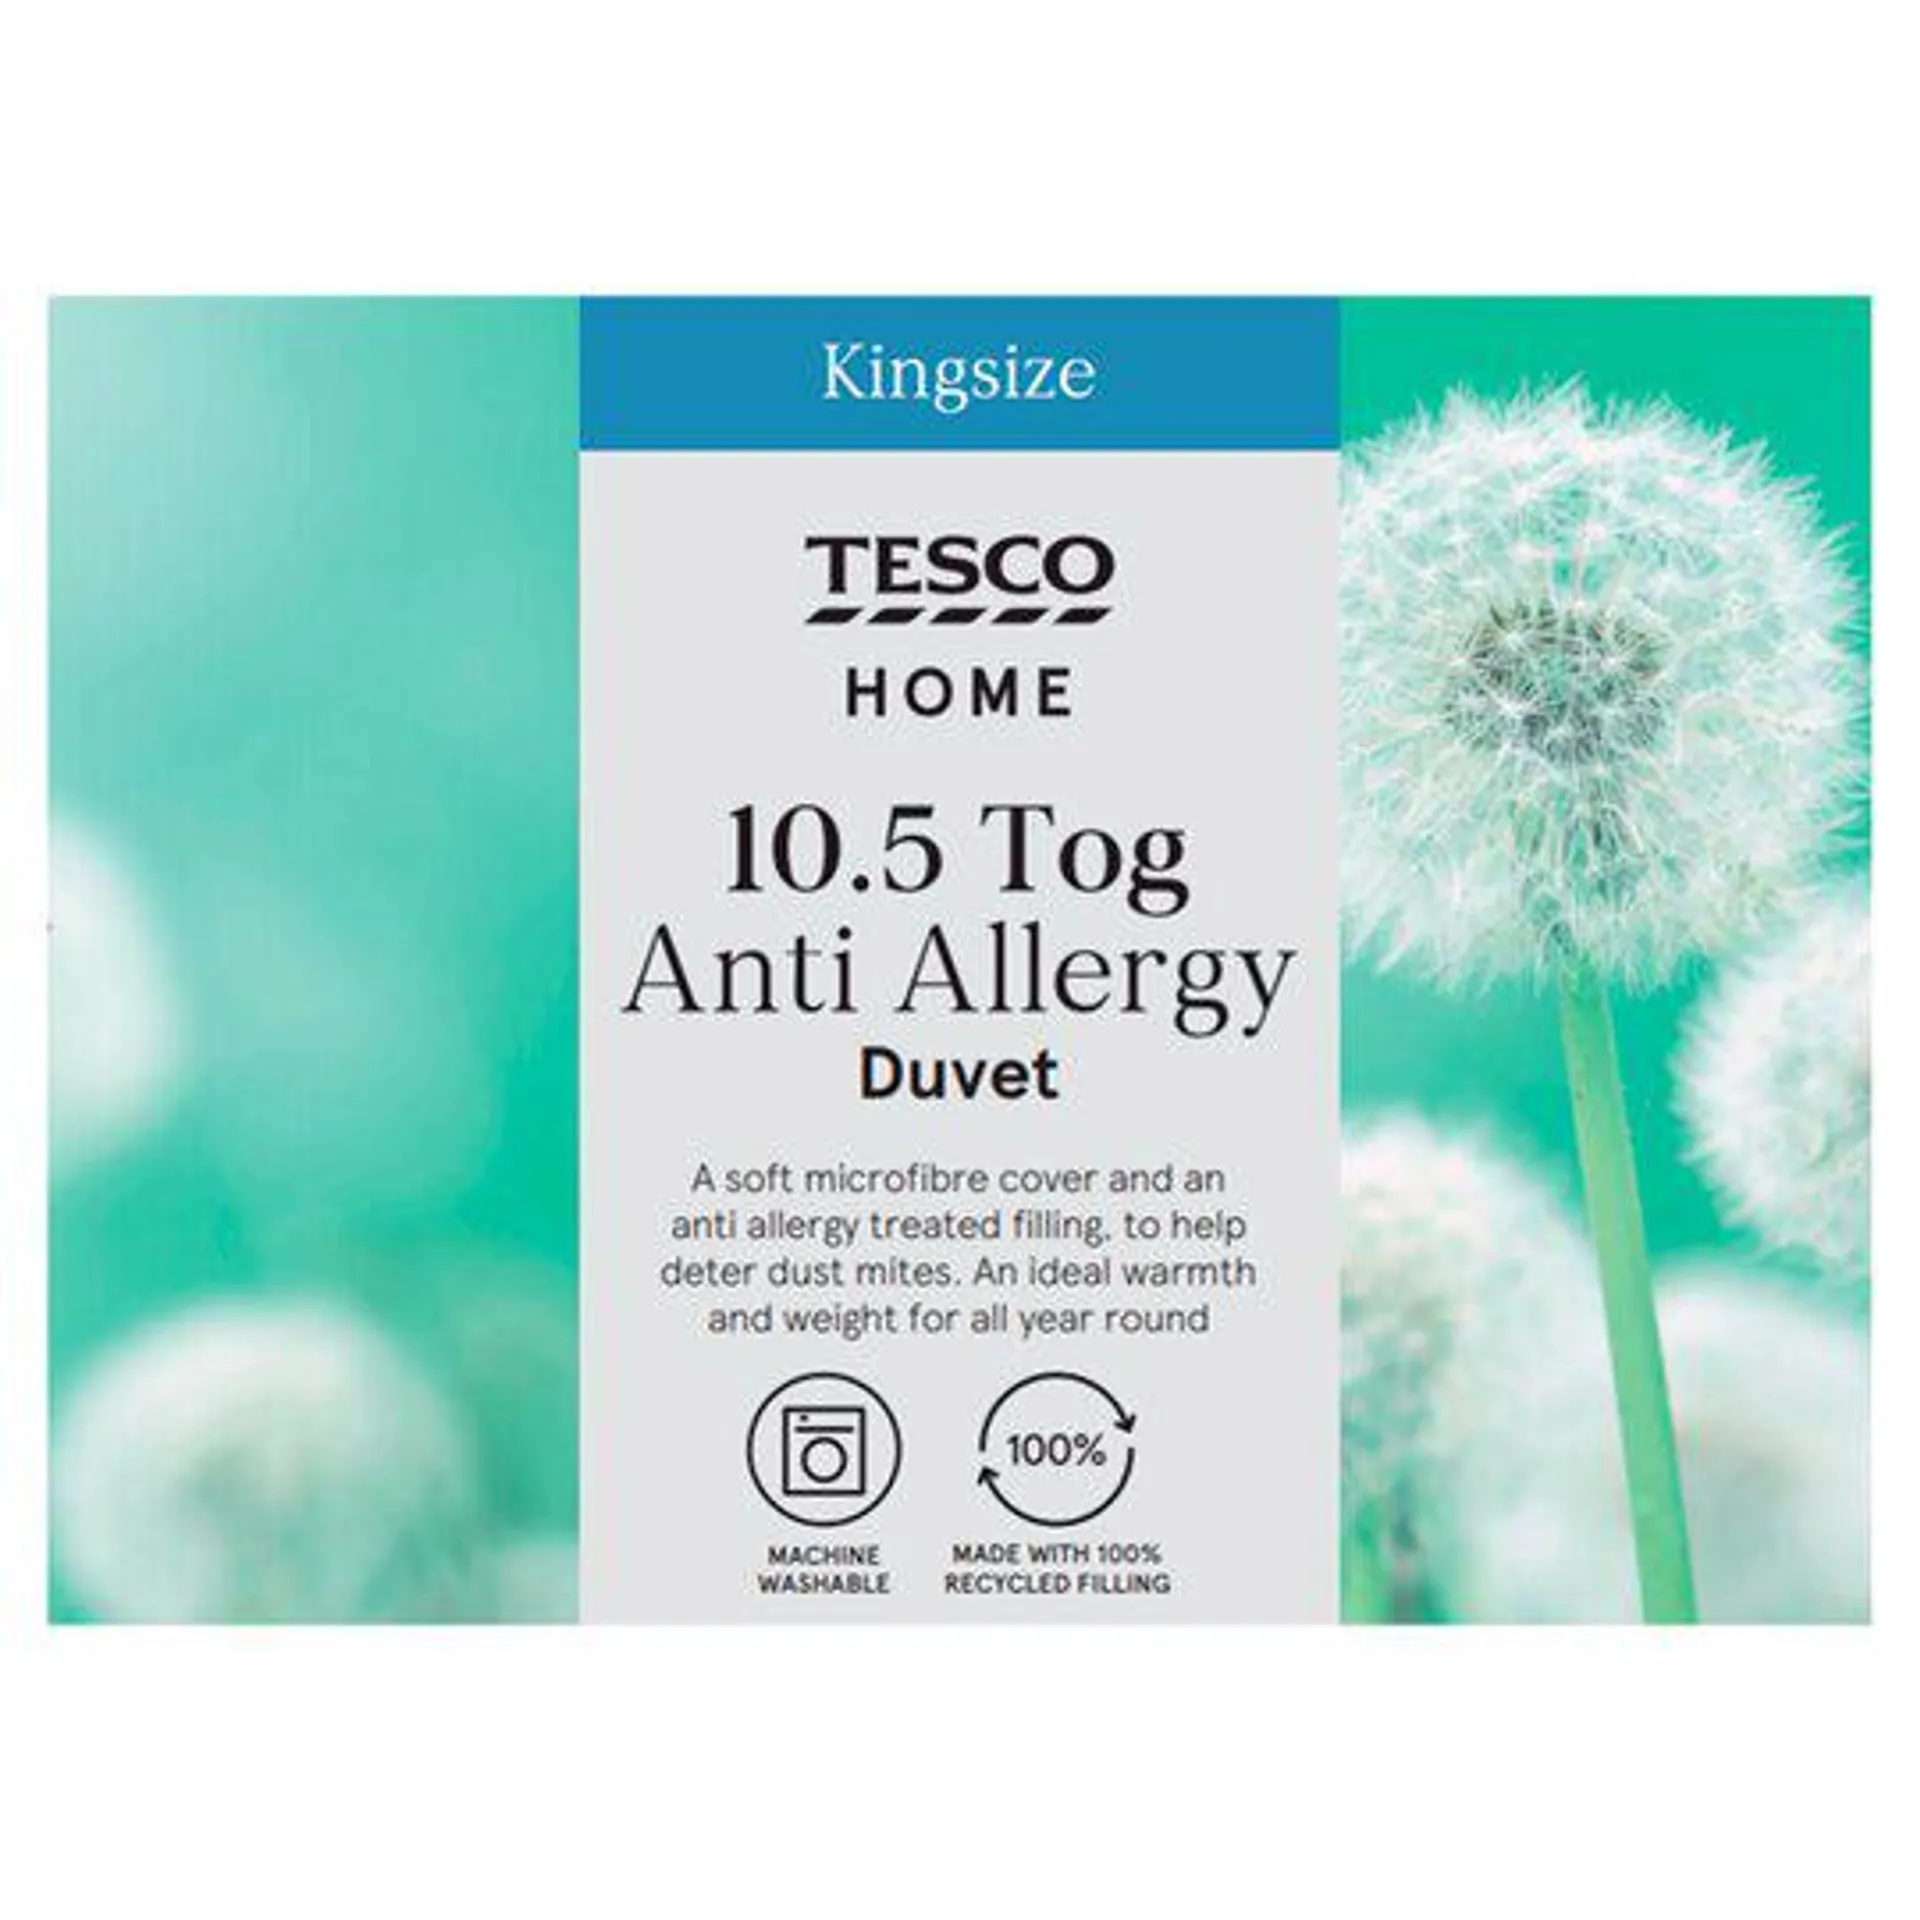 Tesco Anti Allergy 10.5 Tog Duvet King